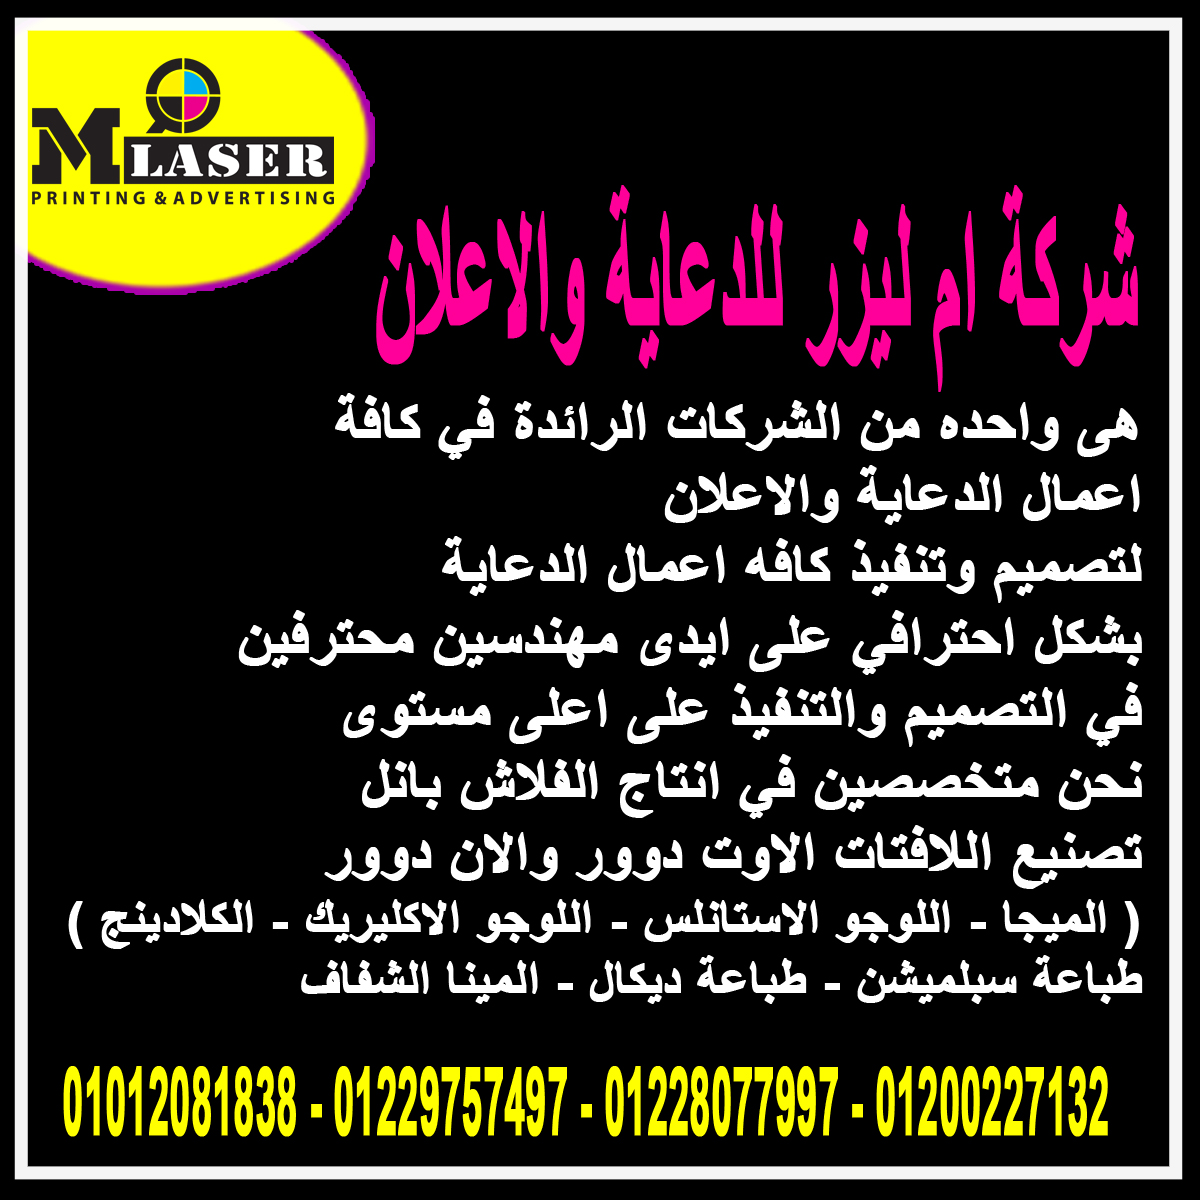 وكالات الدعاية والاعلان في مصر ( شركة ام ليزر للدعاية والاعلان ) P_18968zmjn2